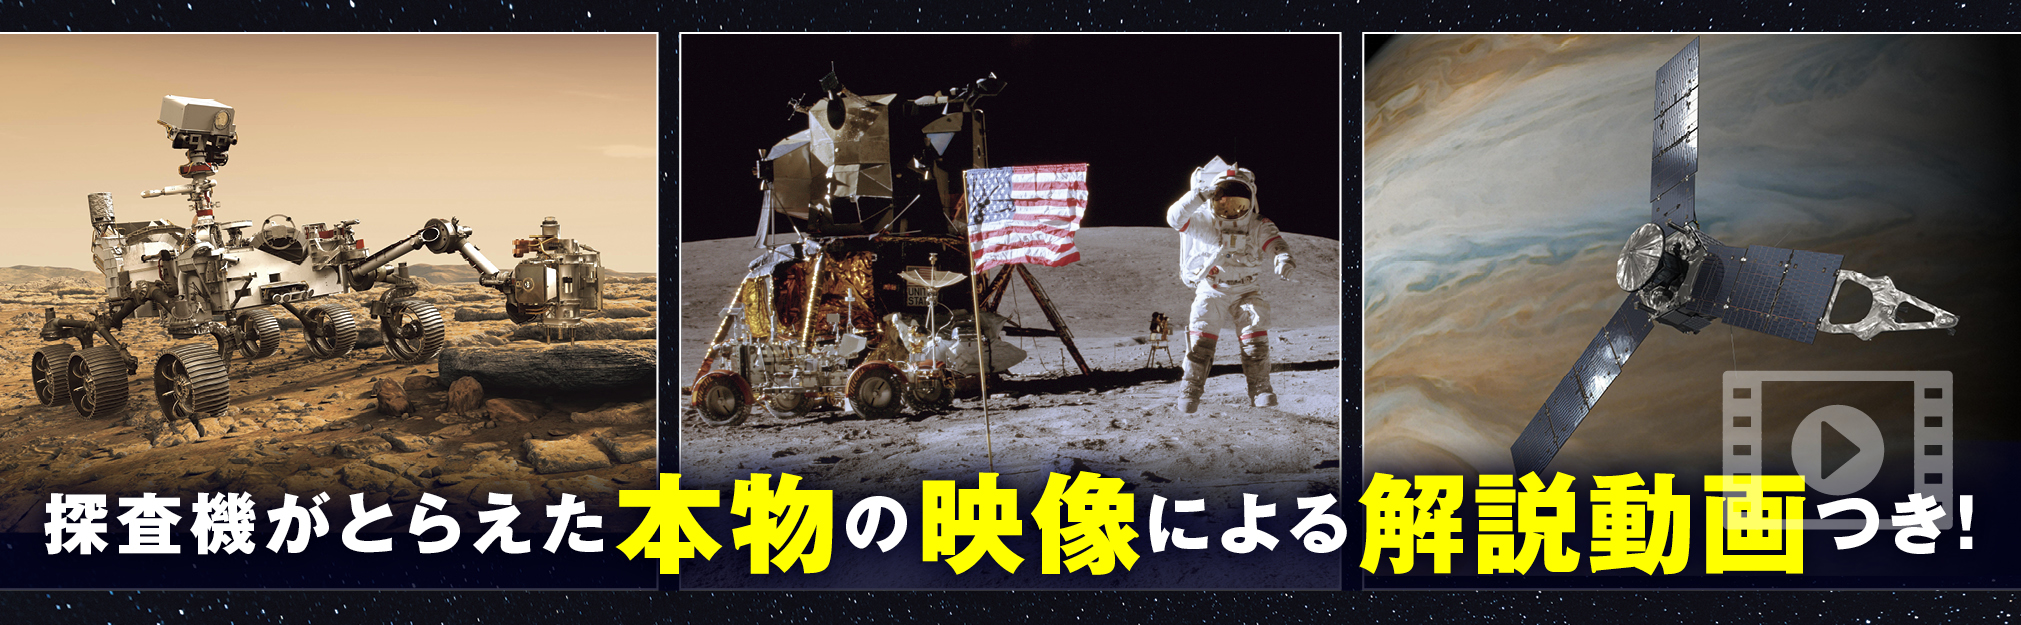 解説動画は探査機が撮影した映像を活用しているという（出典：KADOKAWA）